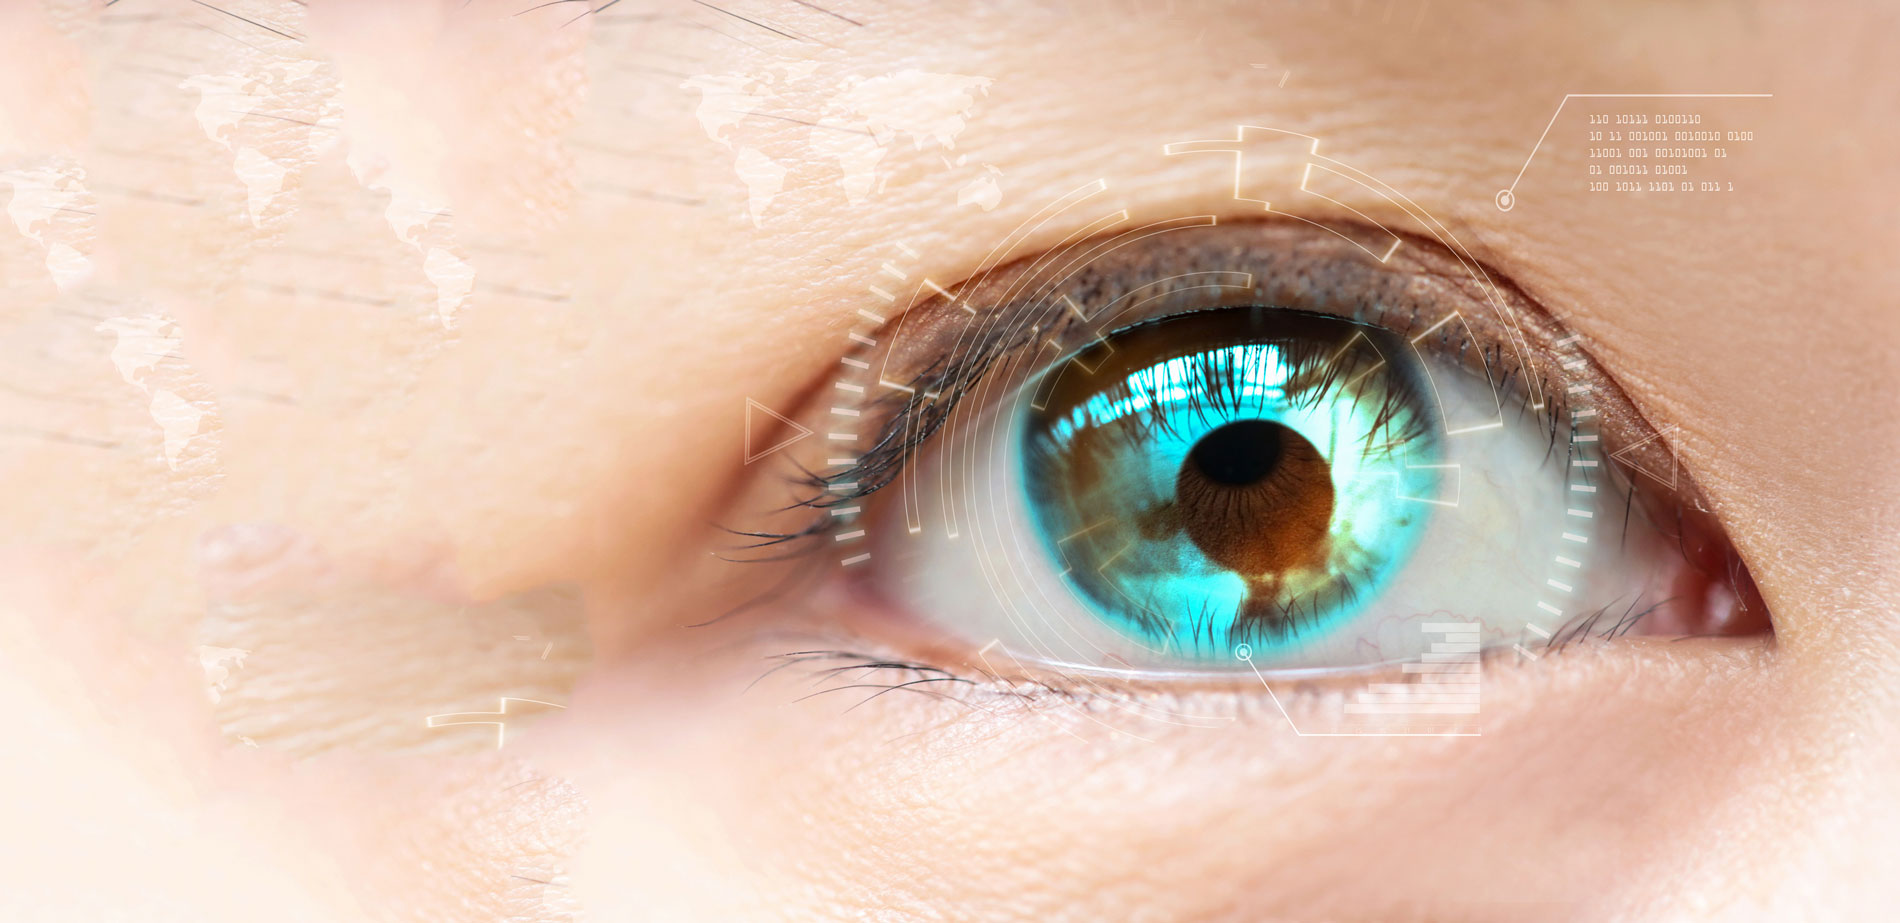 Цифровые контактные линзы. Линзы будущего для глаз. Цифровой глаз. Бионика линзы. Пропадает зрение на одном глазу